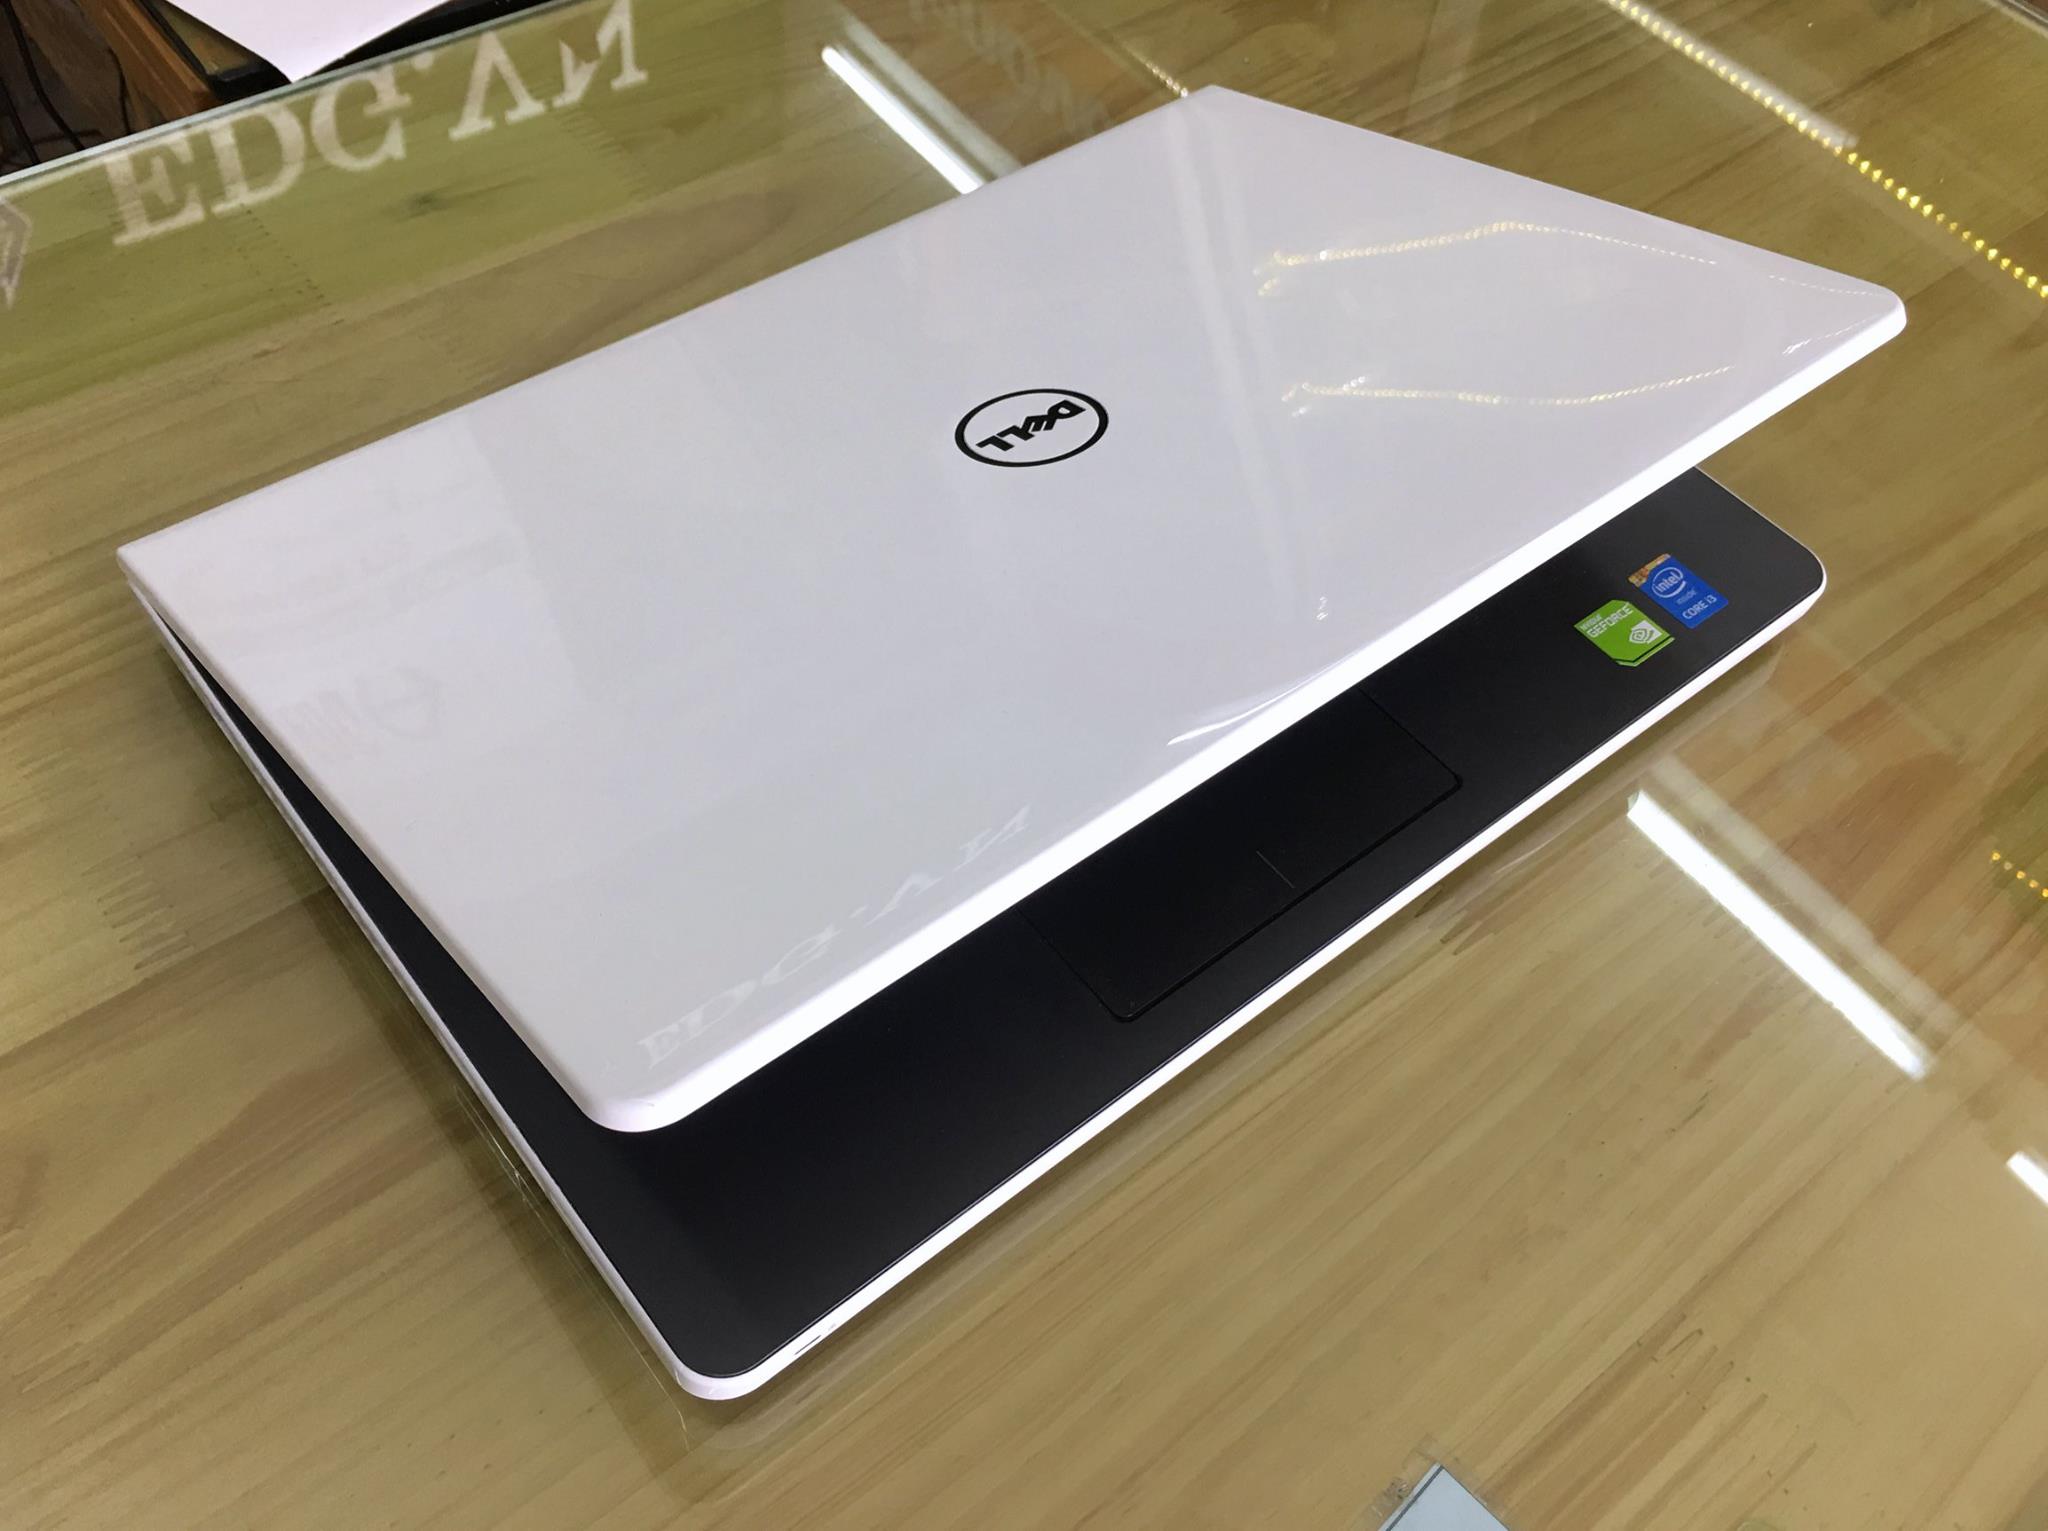 Laptop Dell Inspiron 14R - N5458 M4I3235W-9.jpg